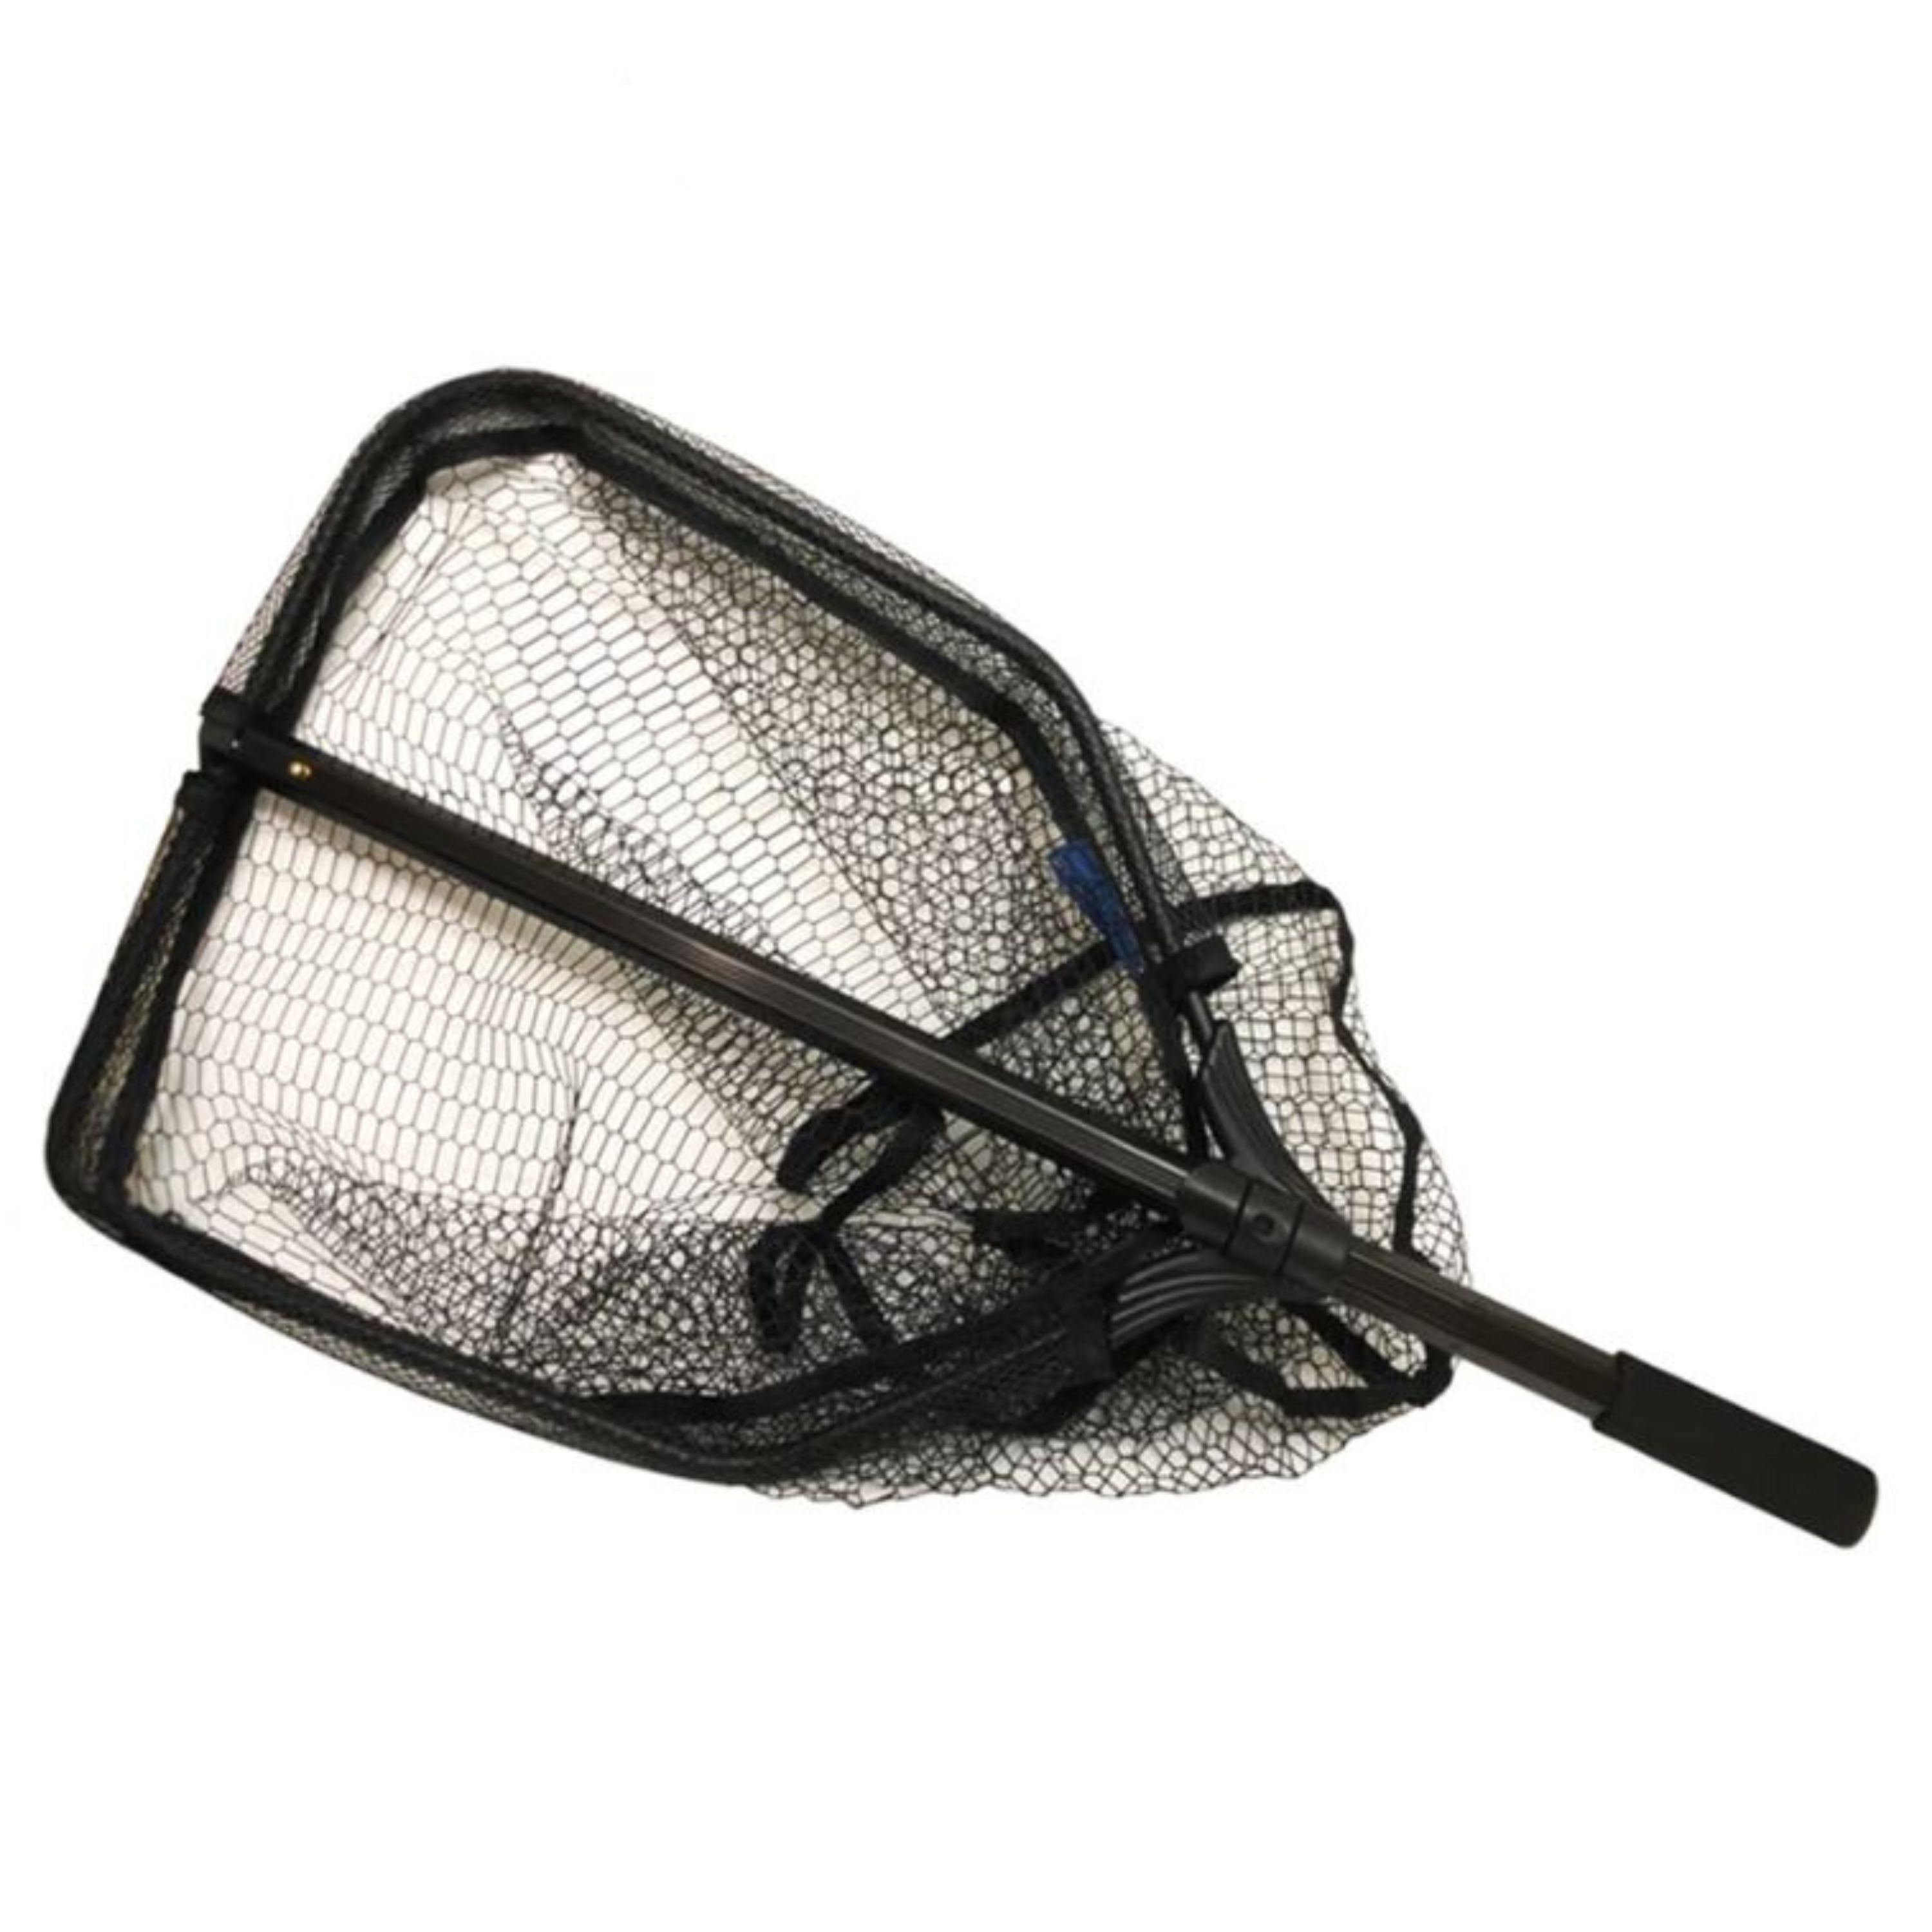 Butterfly folding net